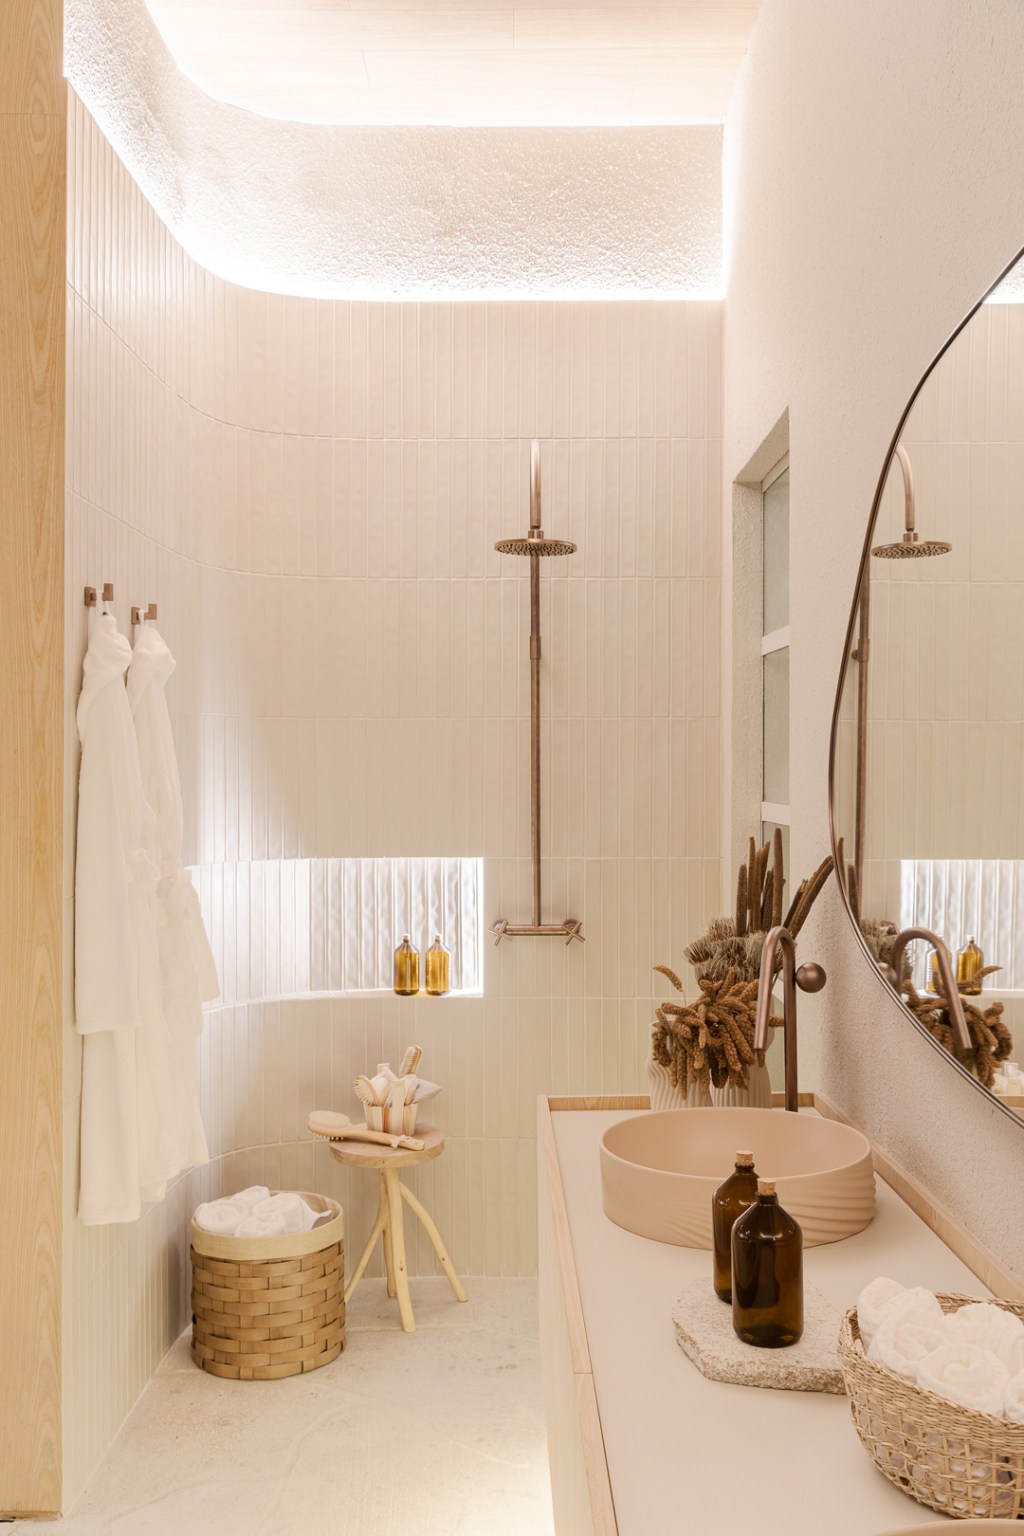 Figueiredo Fischer Arquitetos - Casa Lider. Projeto da CASACOR São Paulo 2023. Na foto, banheiro com parede curva, espelho e nicho.